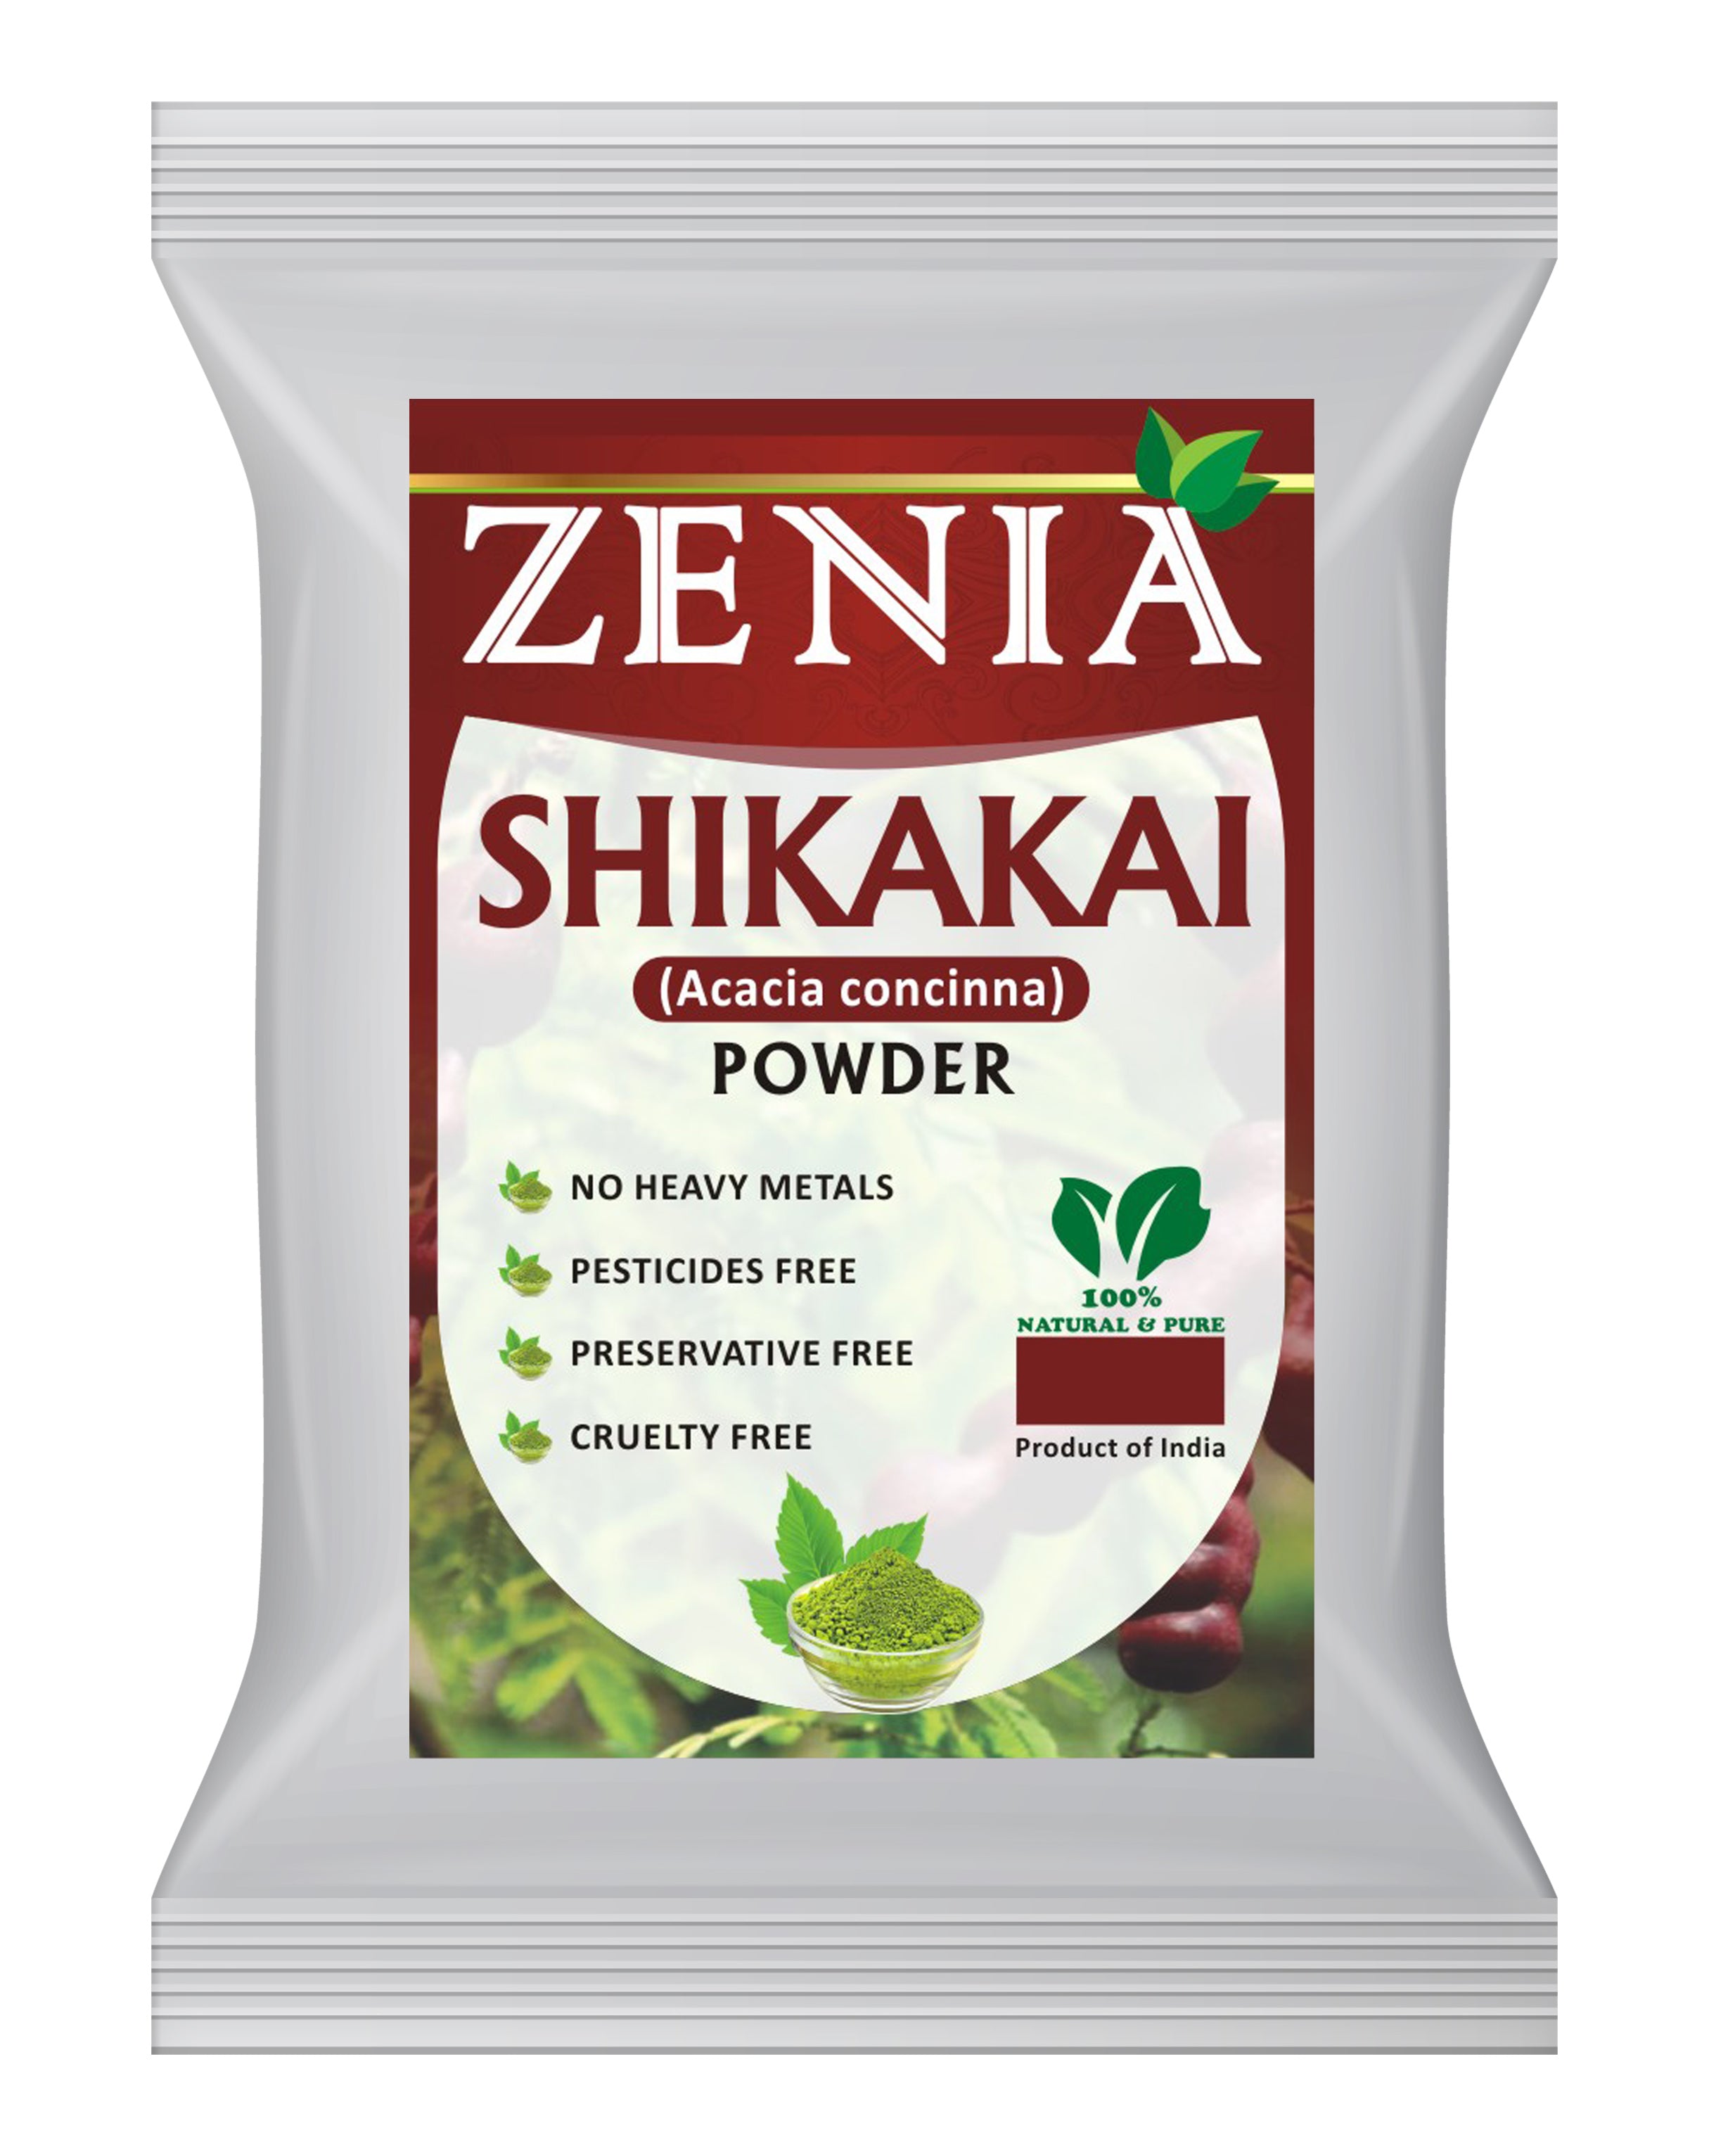 Zenia 100% Pure Shikakai Powder